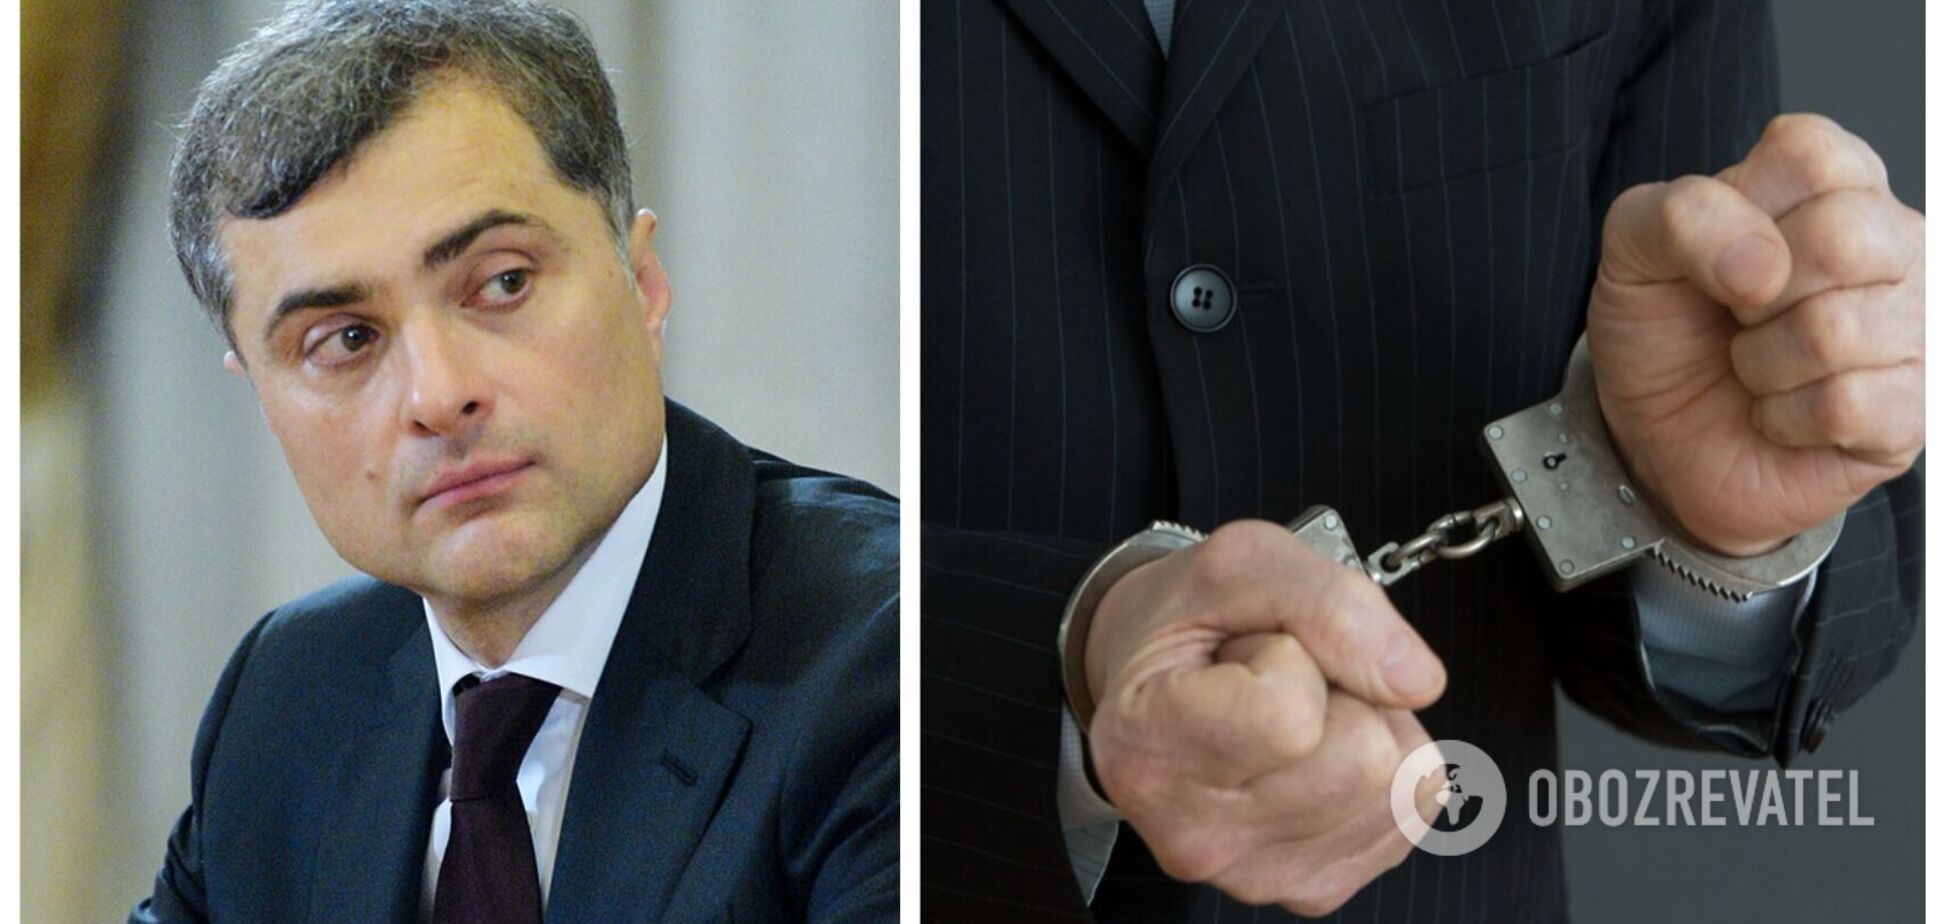 'Гордо стою на дне ямы': арестованный экс-советник Путина Сурков пожаловался на свою судьбу в стихе